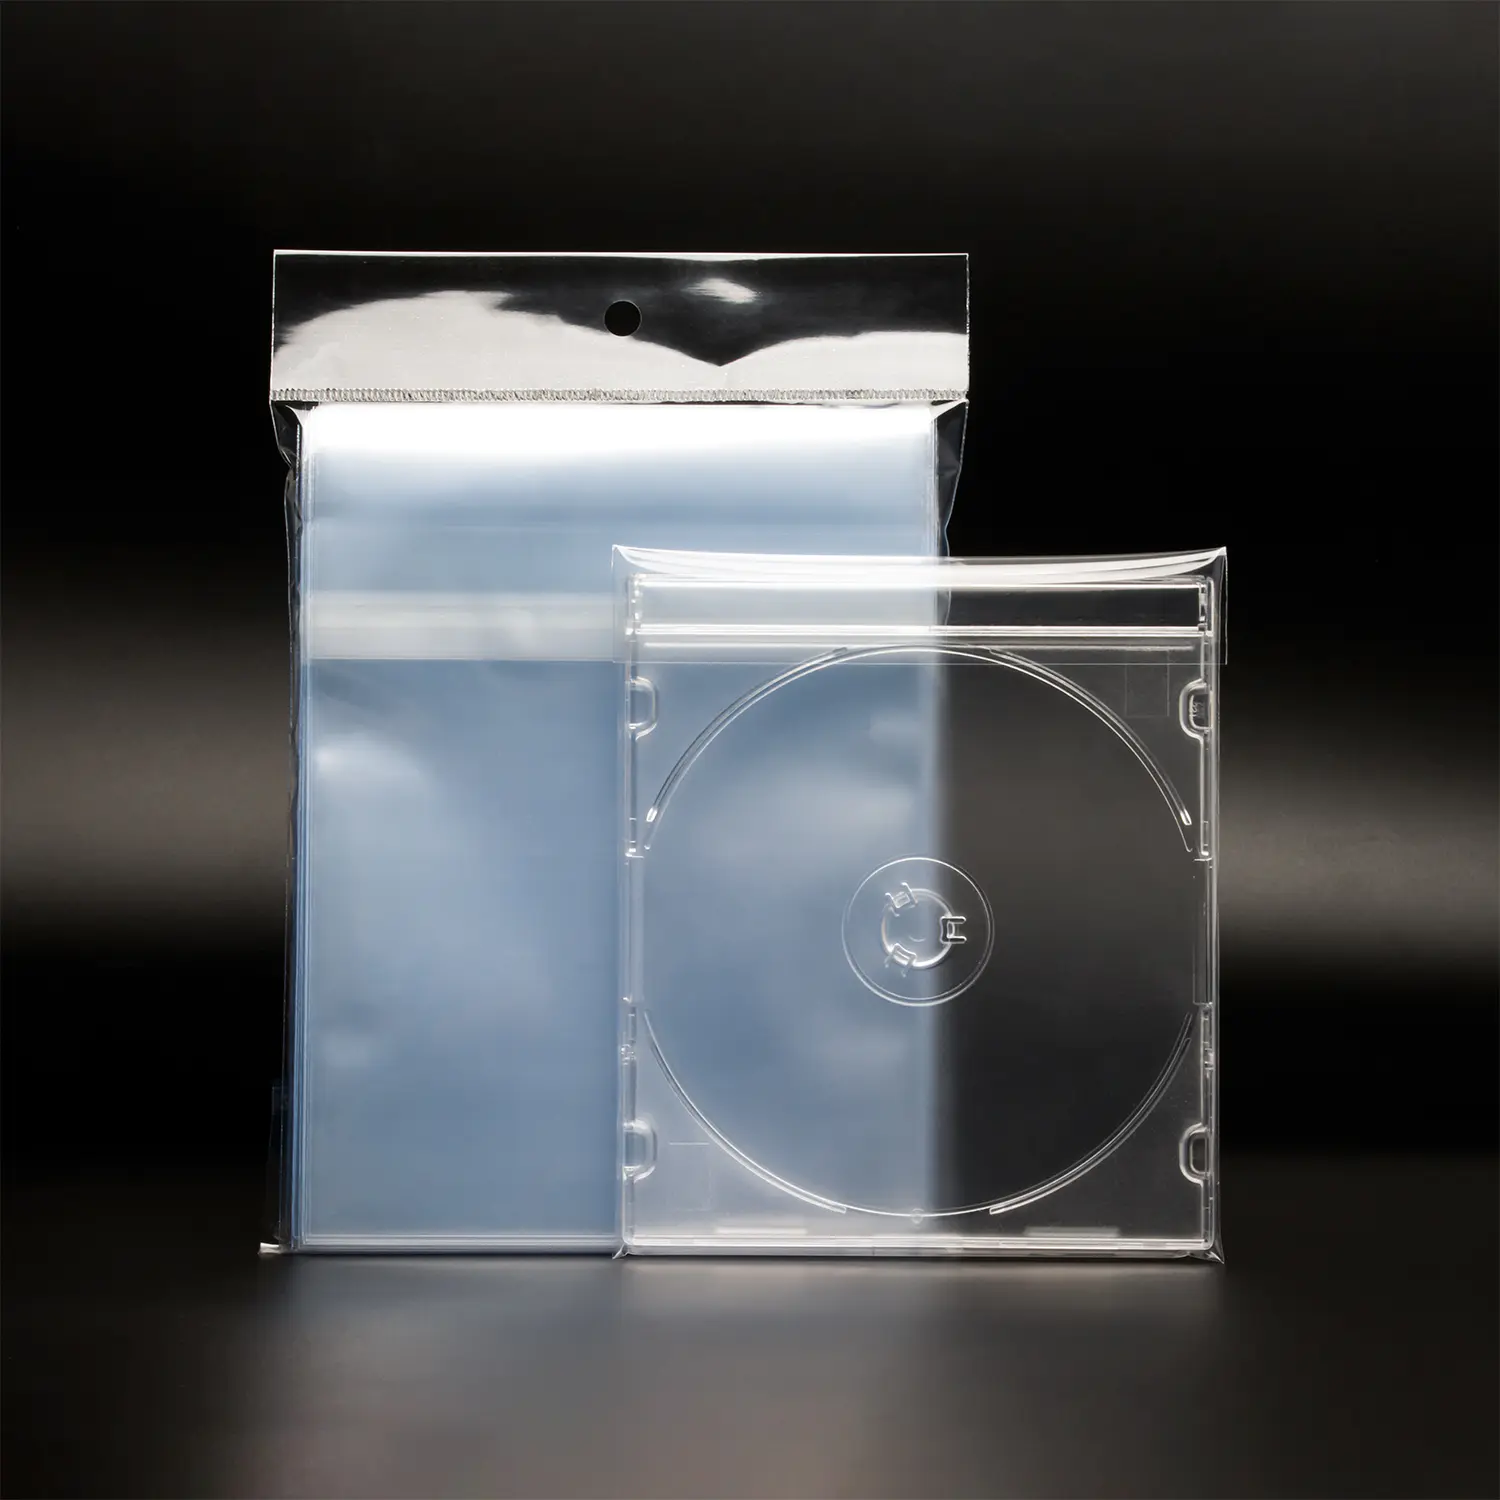 Beg Kes Permata CD Standard yang Boleh Dijual Semula